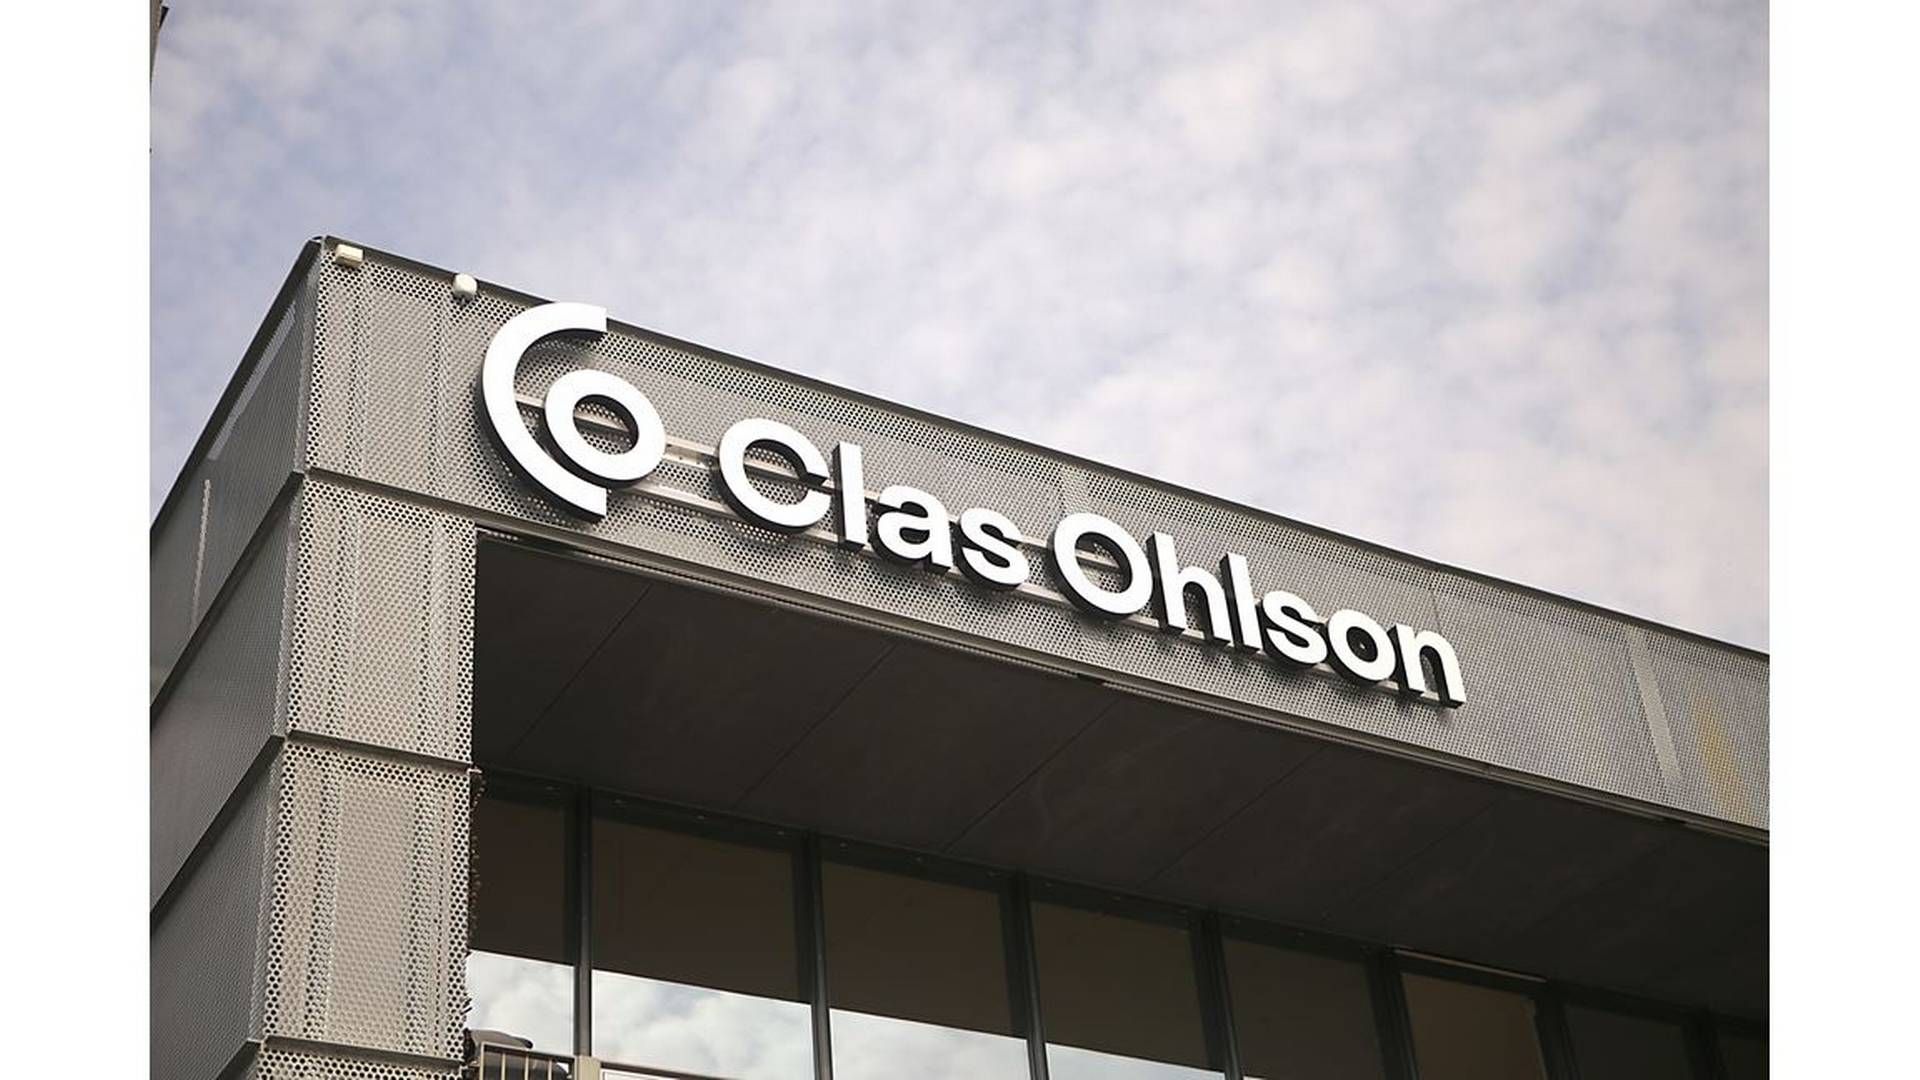 Mange svensker forbereder seg på eventuell krig, noe Clas Ohlson merker. | Foto: Clas Ohlson